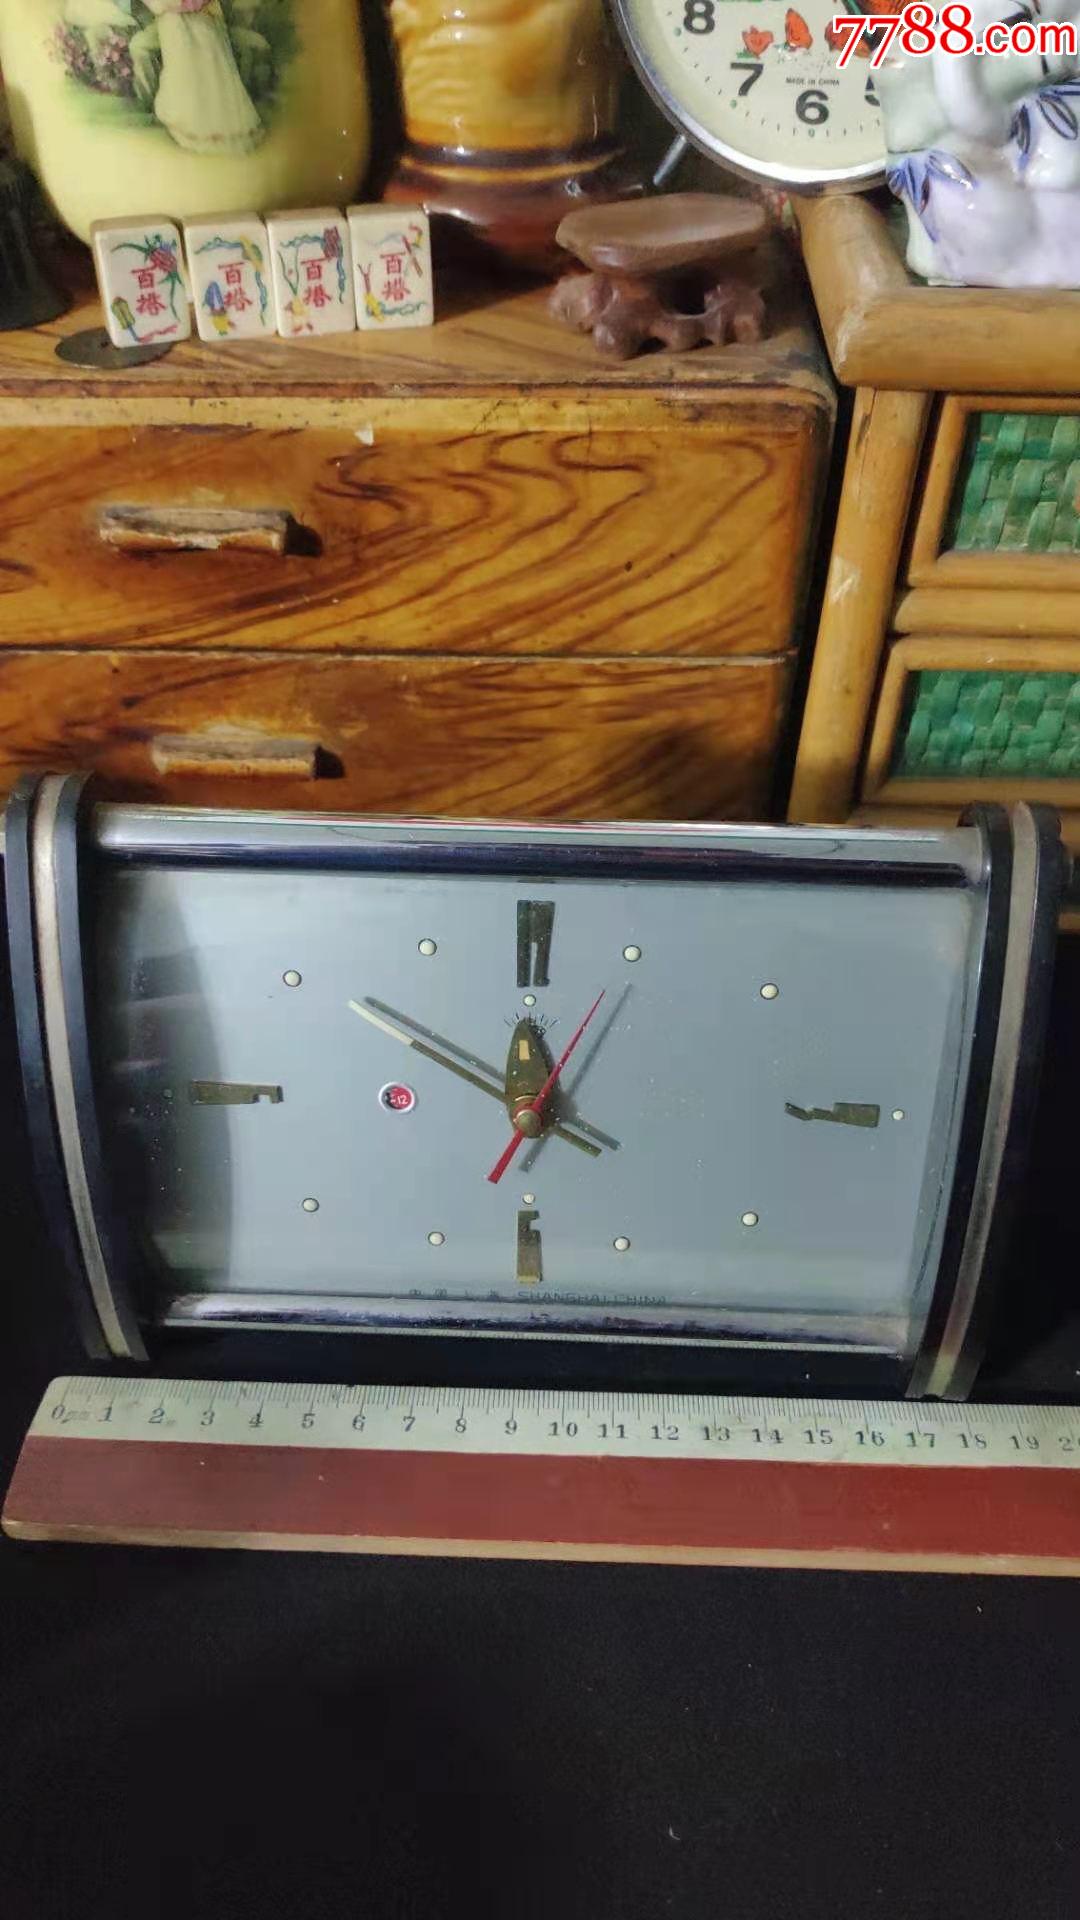 上世纪70-80年代上海钟表厂钻石牌老式台式闹钟时走时